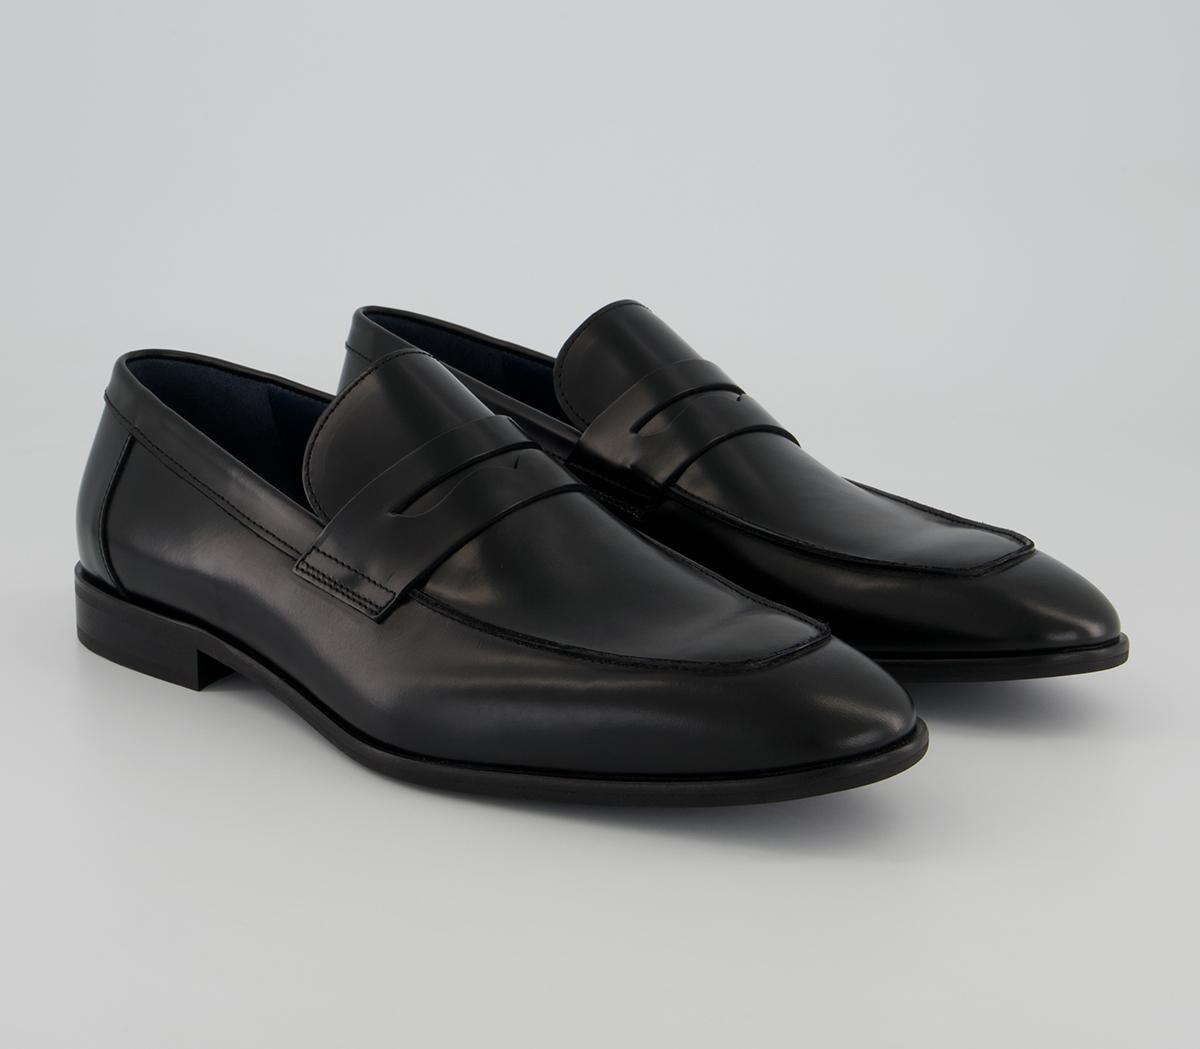 Poste Pembroke Saddle Loafers Black Leather - Men’s Smart Shoes